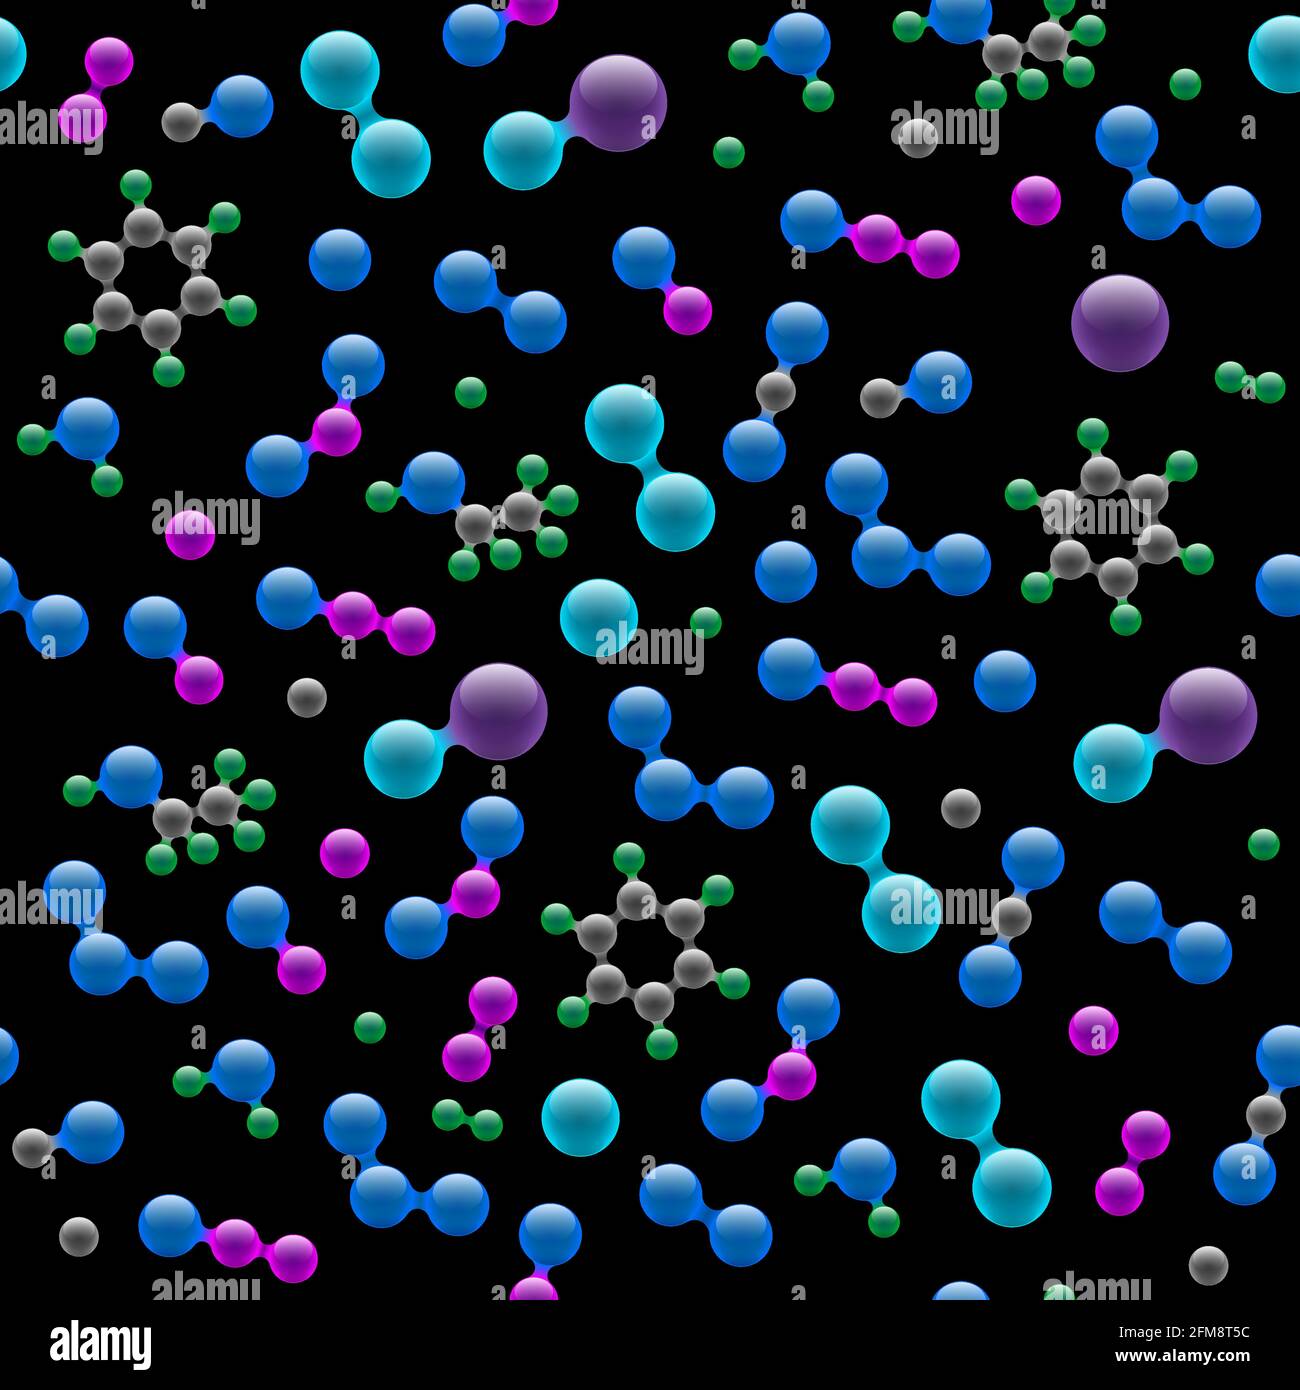 Chemie Atomic Molecular 3D Struktur nahtloses Muster. Abstraktes Designkonzept für die Wissenschaft Biotechnologie chemische Industrie. Vektor-Atome und Moleküle Textur auf schwarzem Hintergrund eps Abbildung Stock Vektor